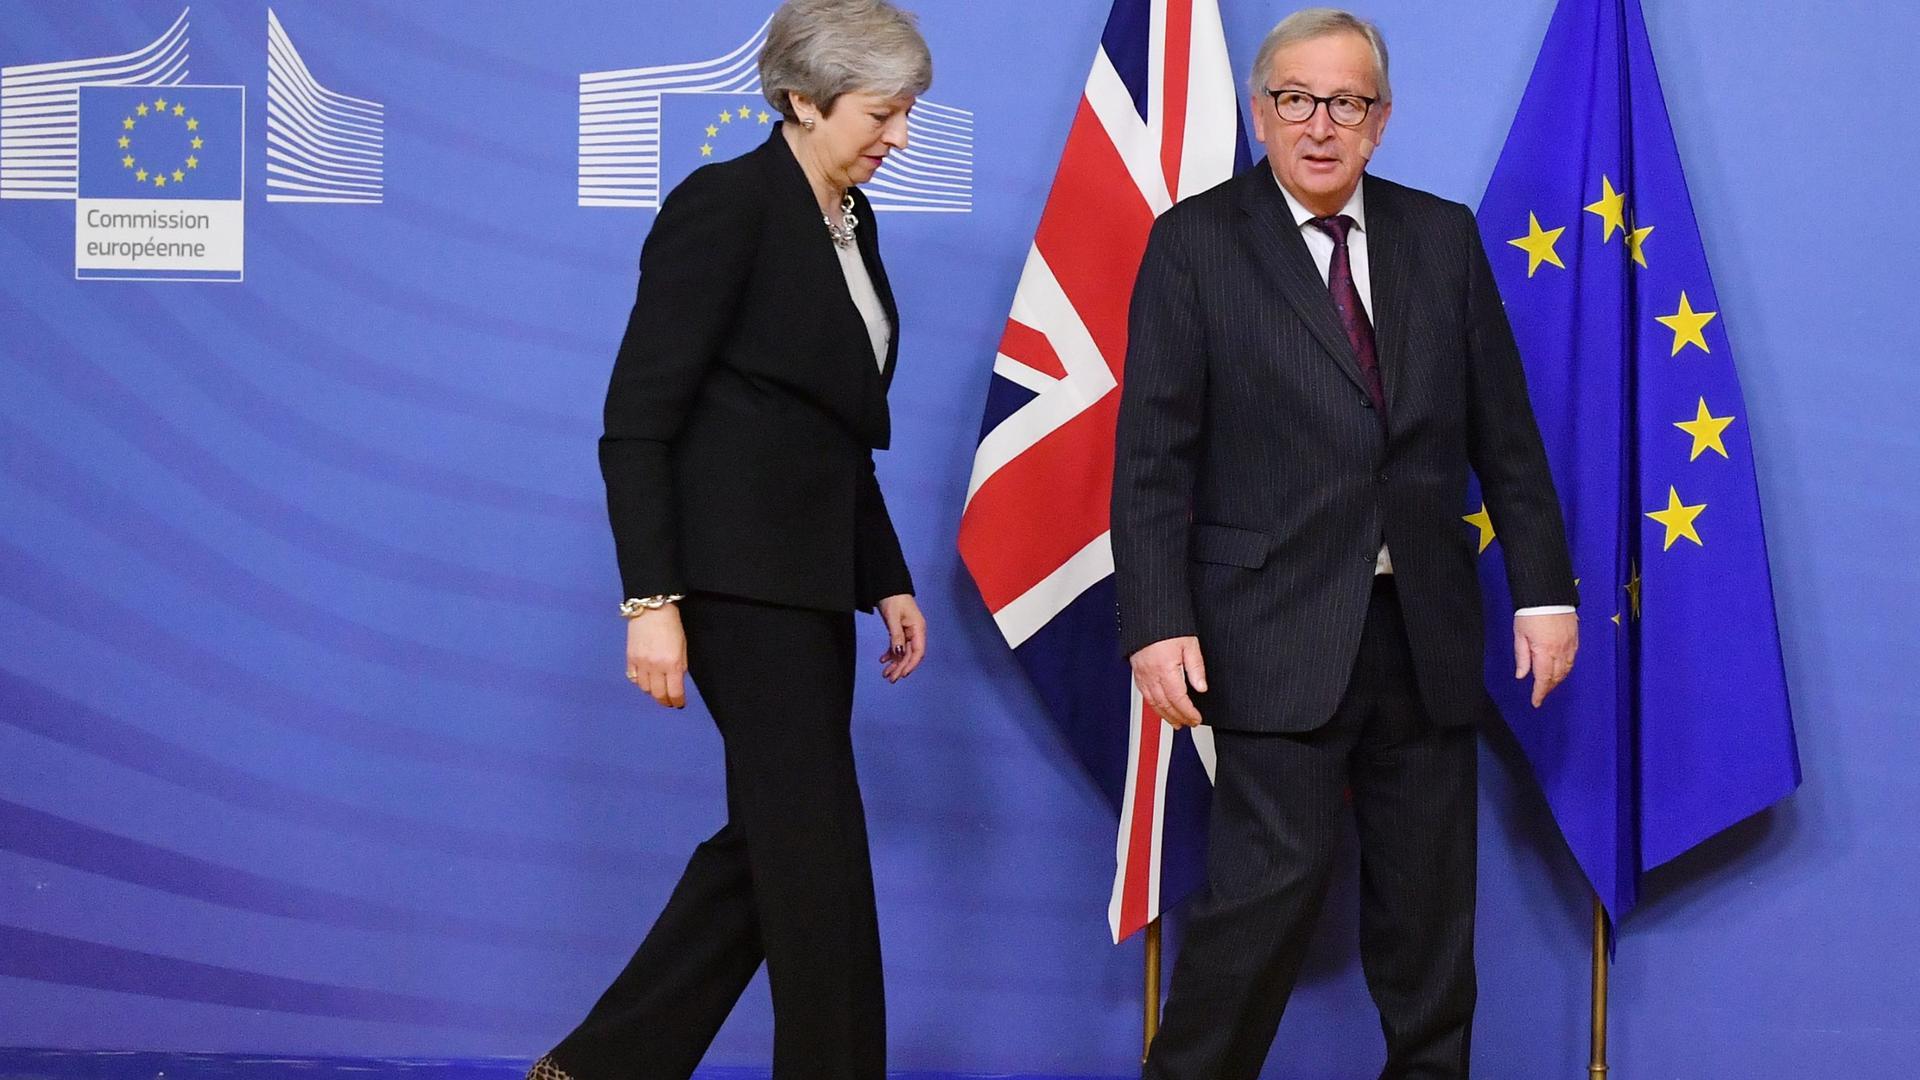 Le président de la Commission européenne Jean-Claude Juncker et la Première ministre britannique Theresa May se sont entretenus à Bruxelles mercredi.